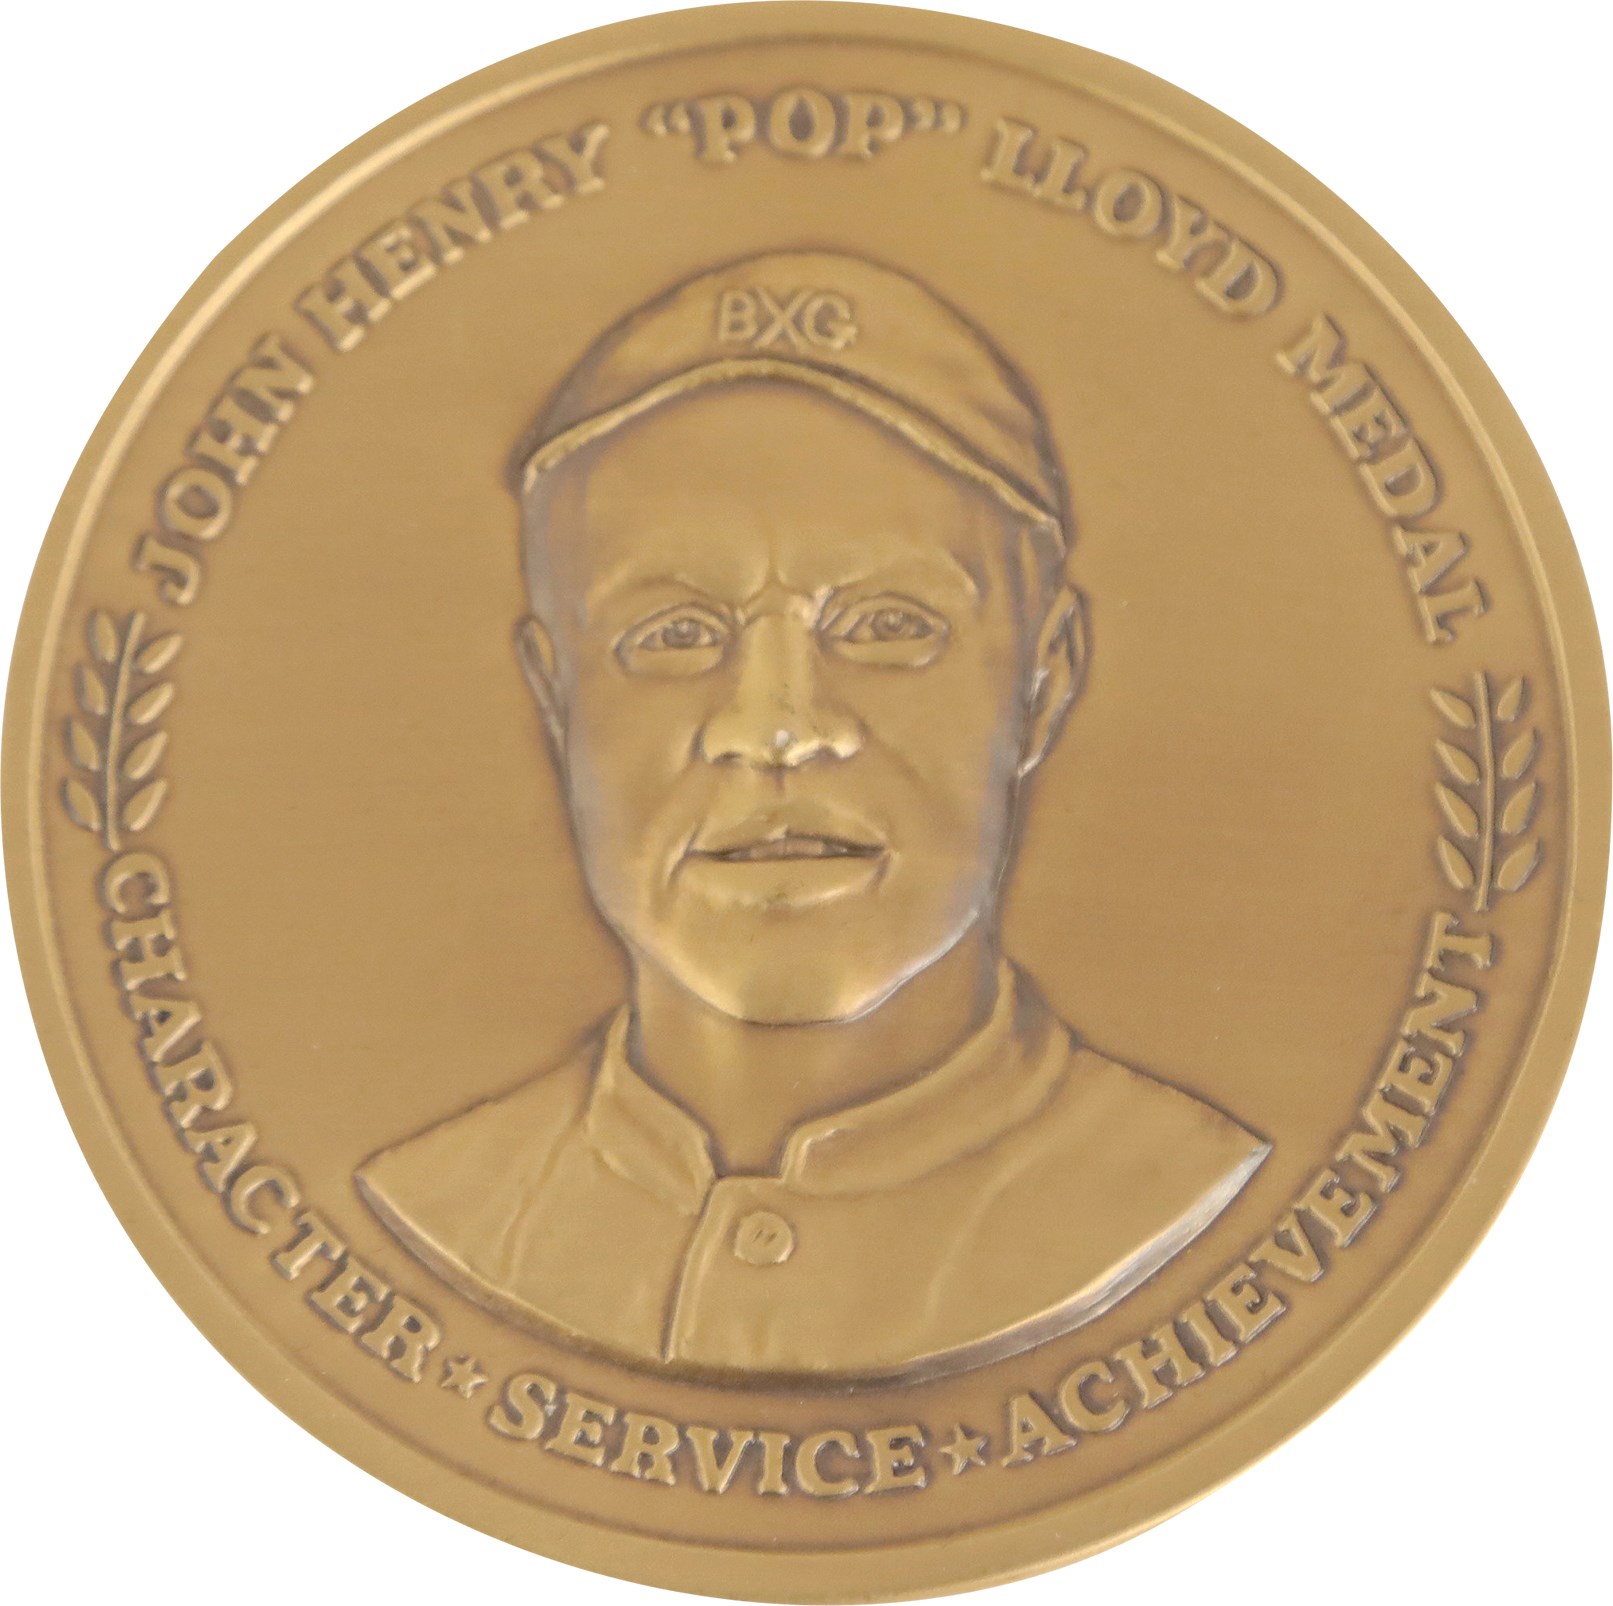 - John Henry "Pop" Lloyd Medal Presented to Baseball Hall of Famer Monte Irvin